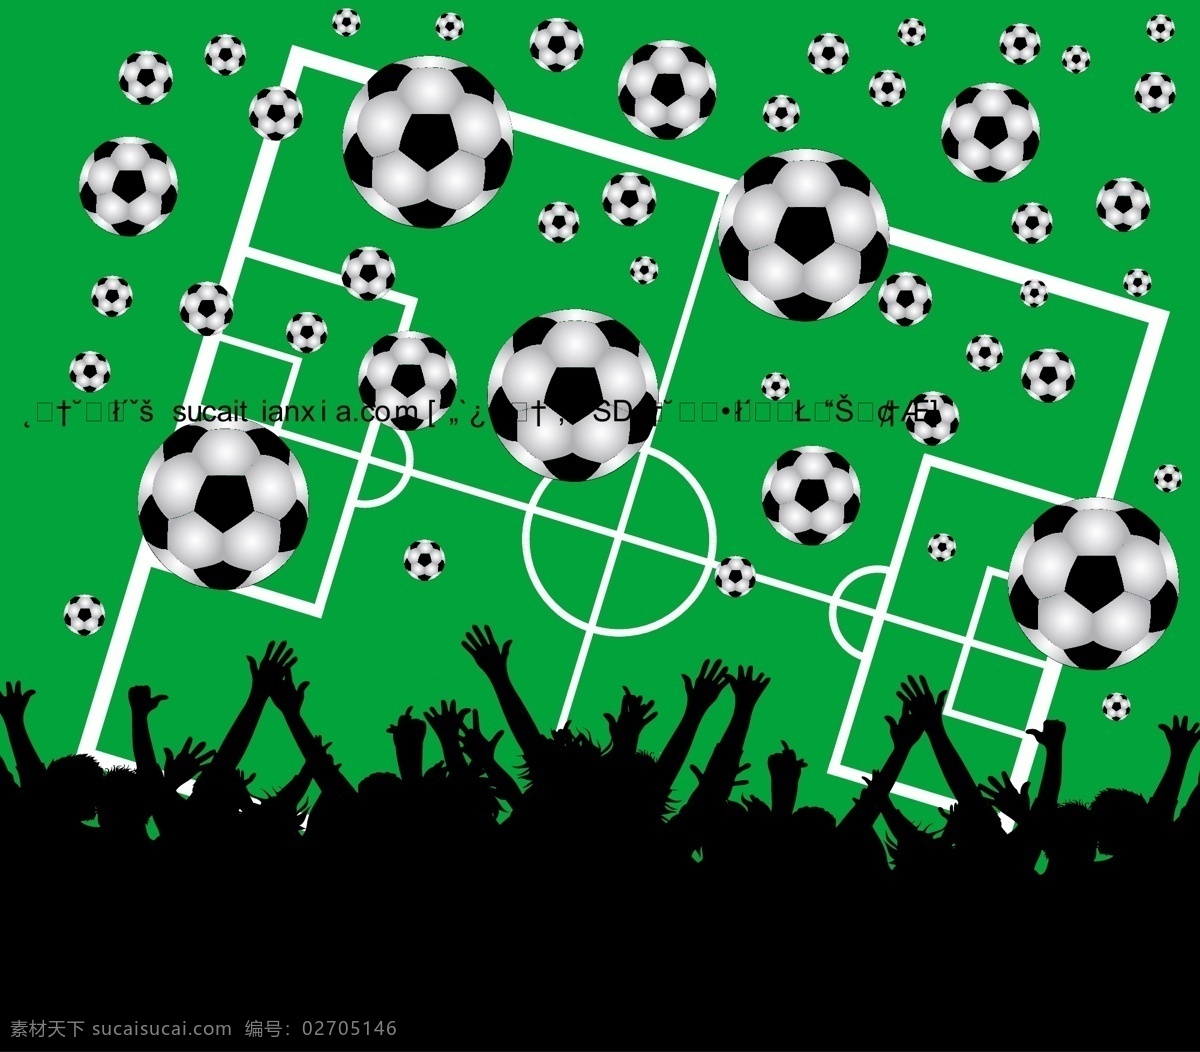 世界杯 足球赛 背景 矢量 剪影 金杯 球场 球网 欢呼人物 矢量图 其他矢量图